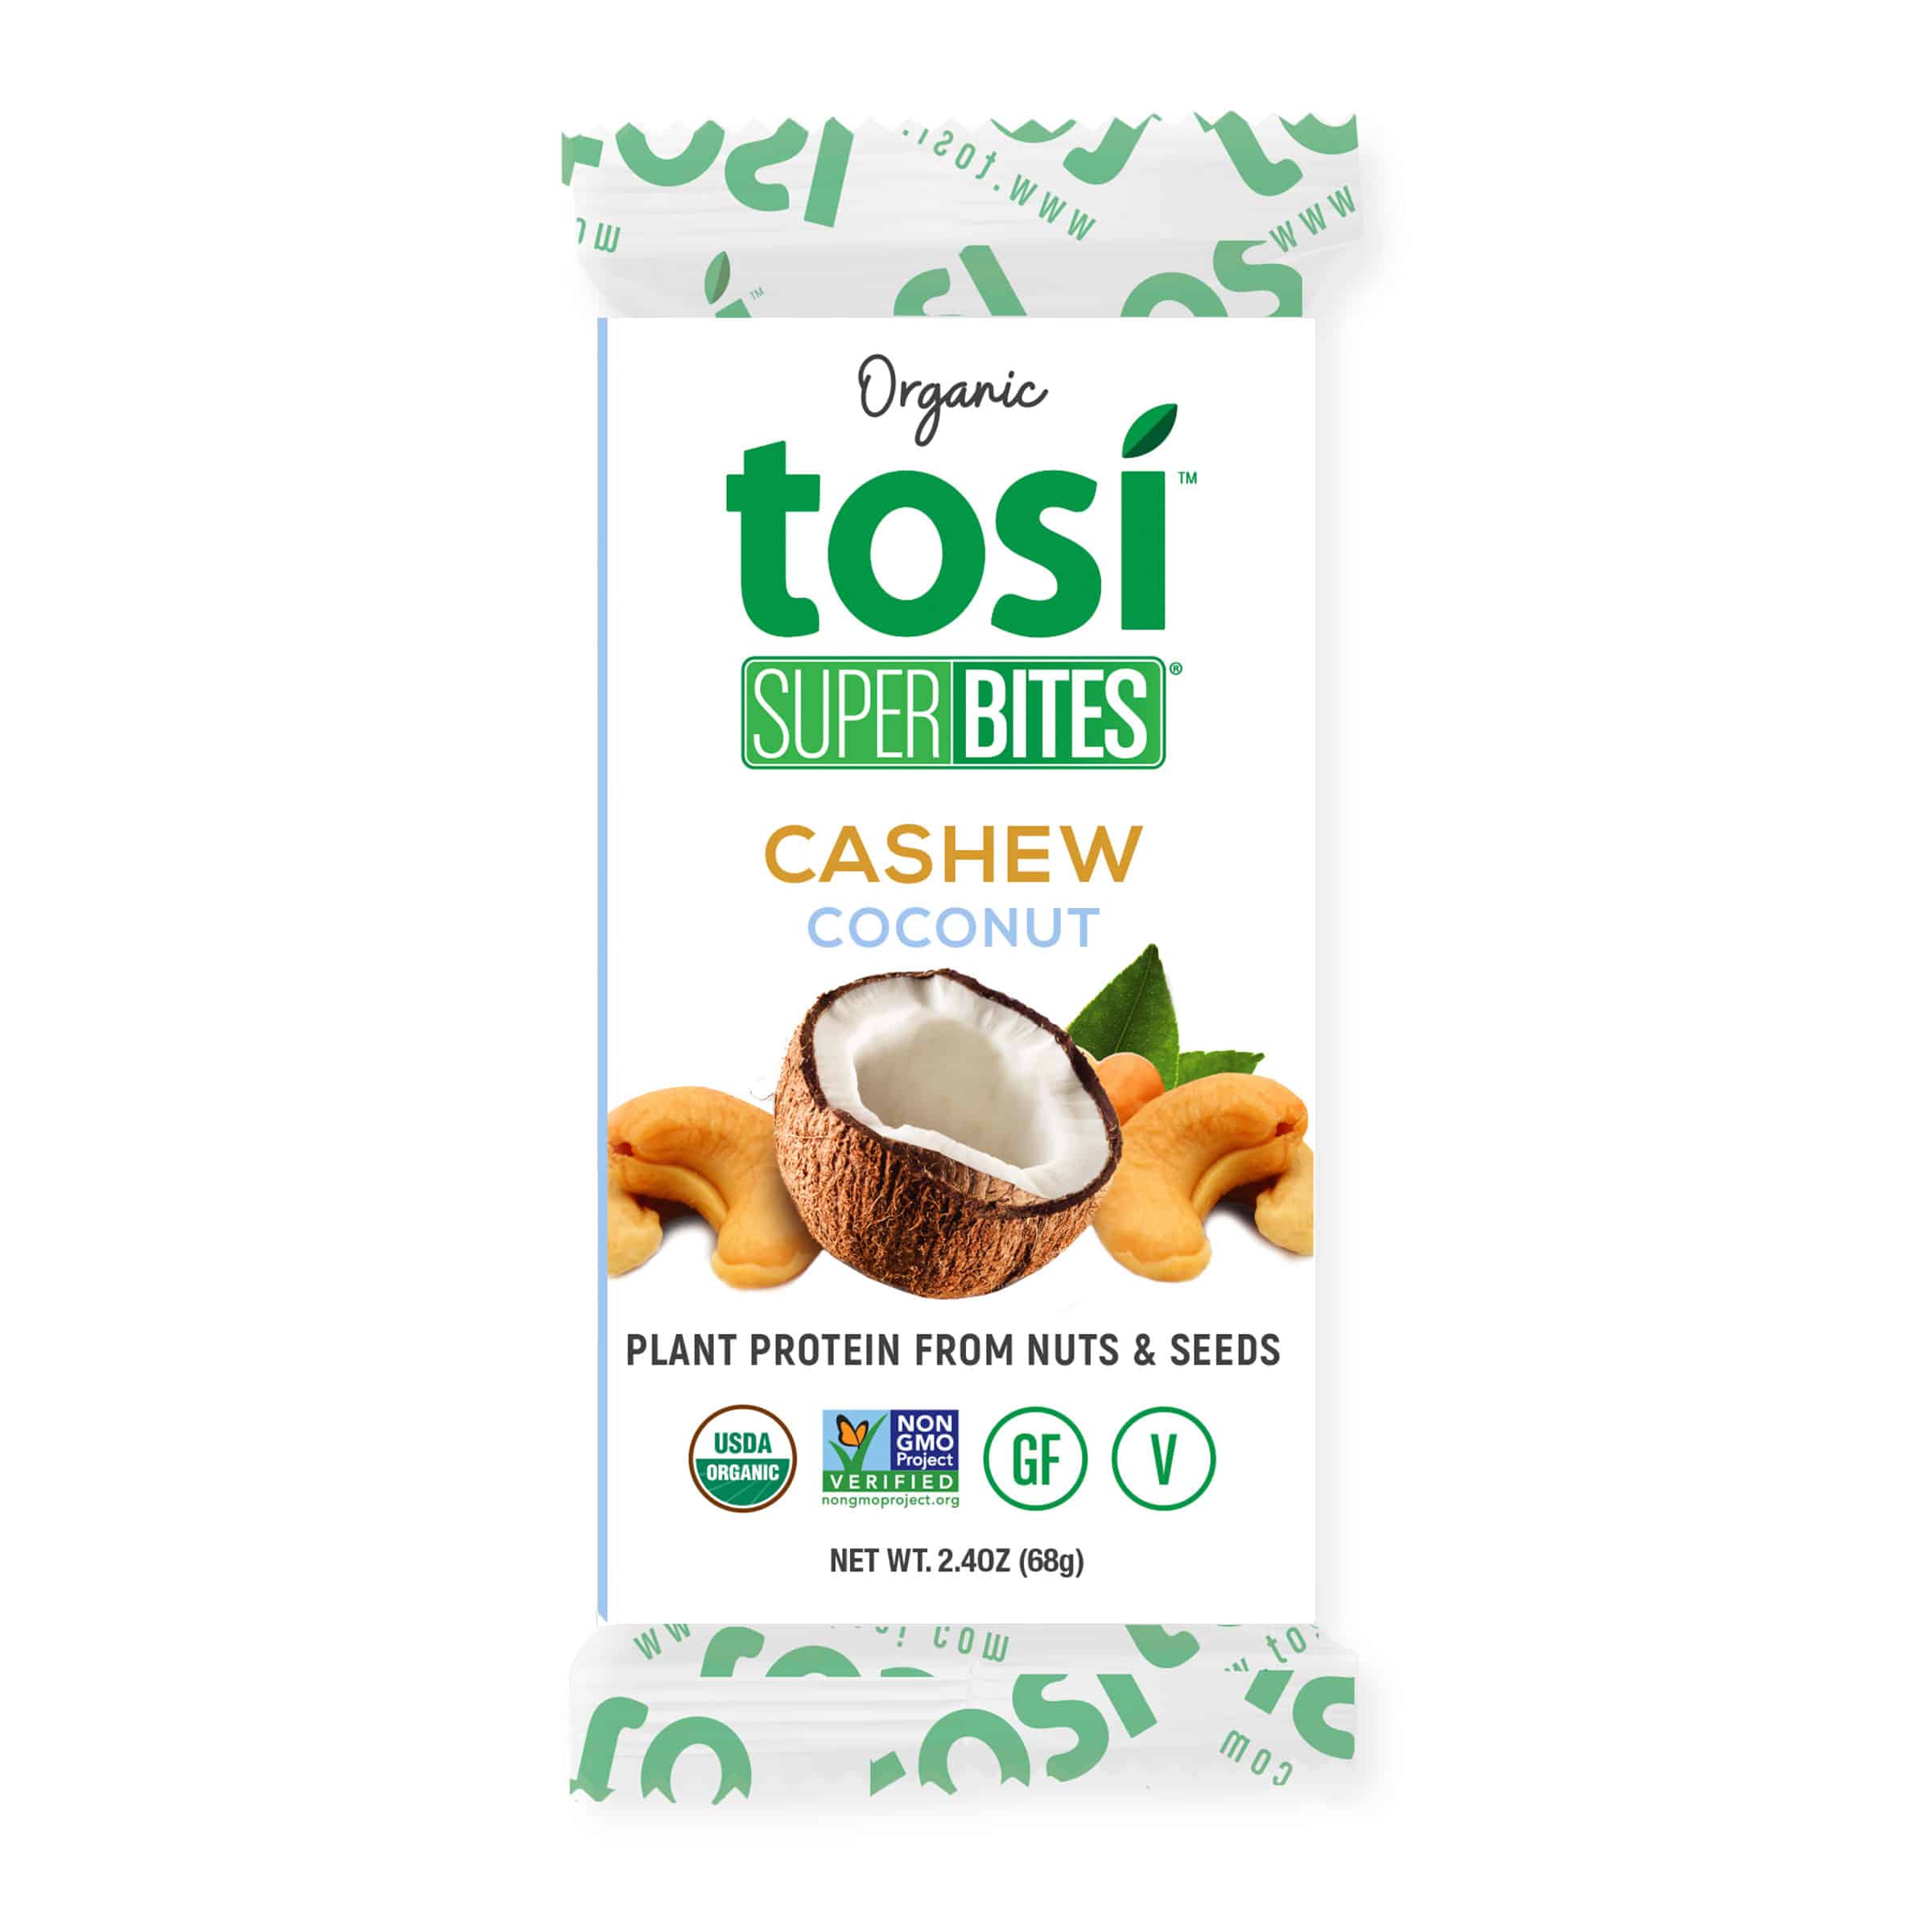 Tosi SuperBites Cashew Coconut 4 innerpacks per case 28.8 oz